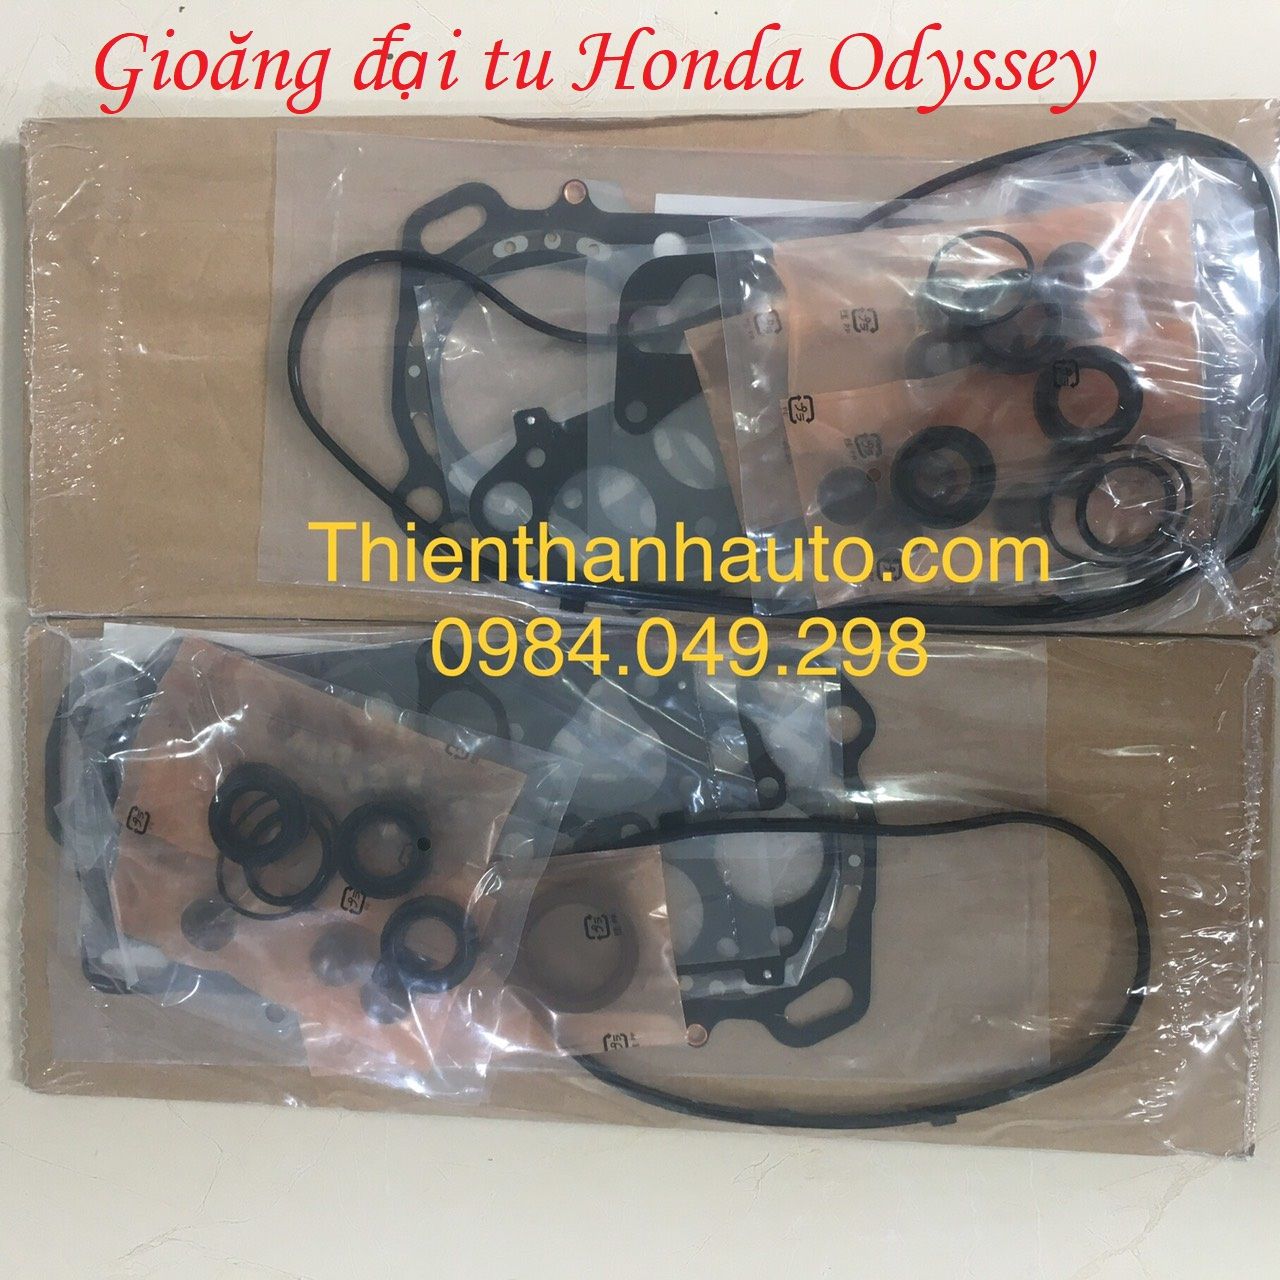 Bộ gioăng phớt đại tu Honda Odyssey 2004-2011 - Sản phẩm của Honda Nhật Bản - Thienthanhauto.com